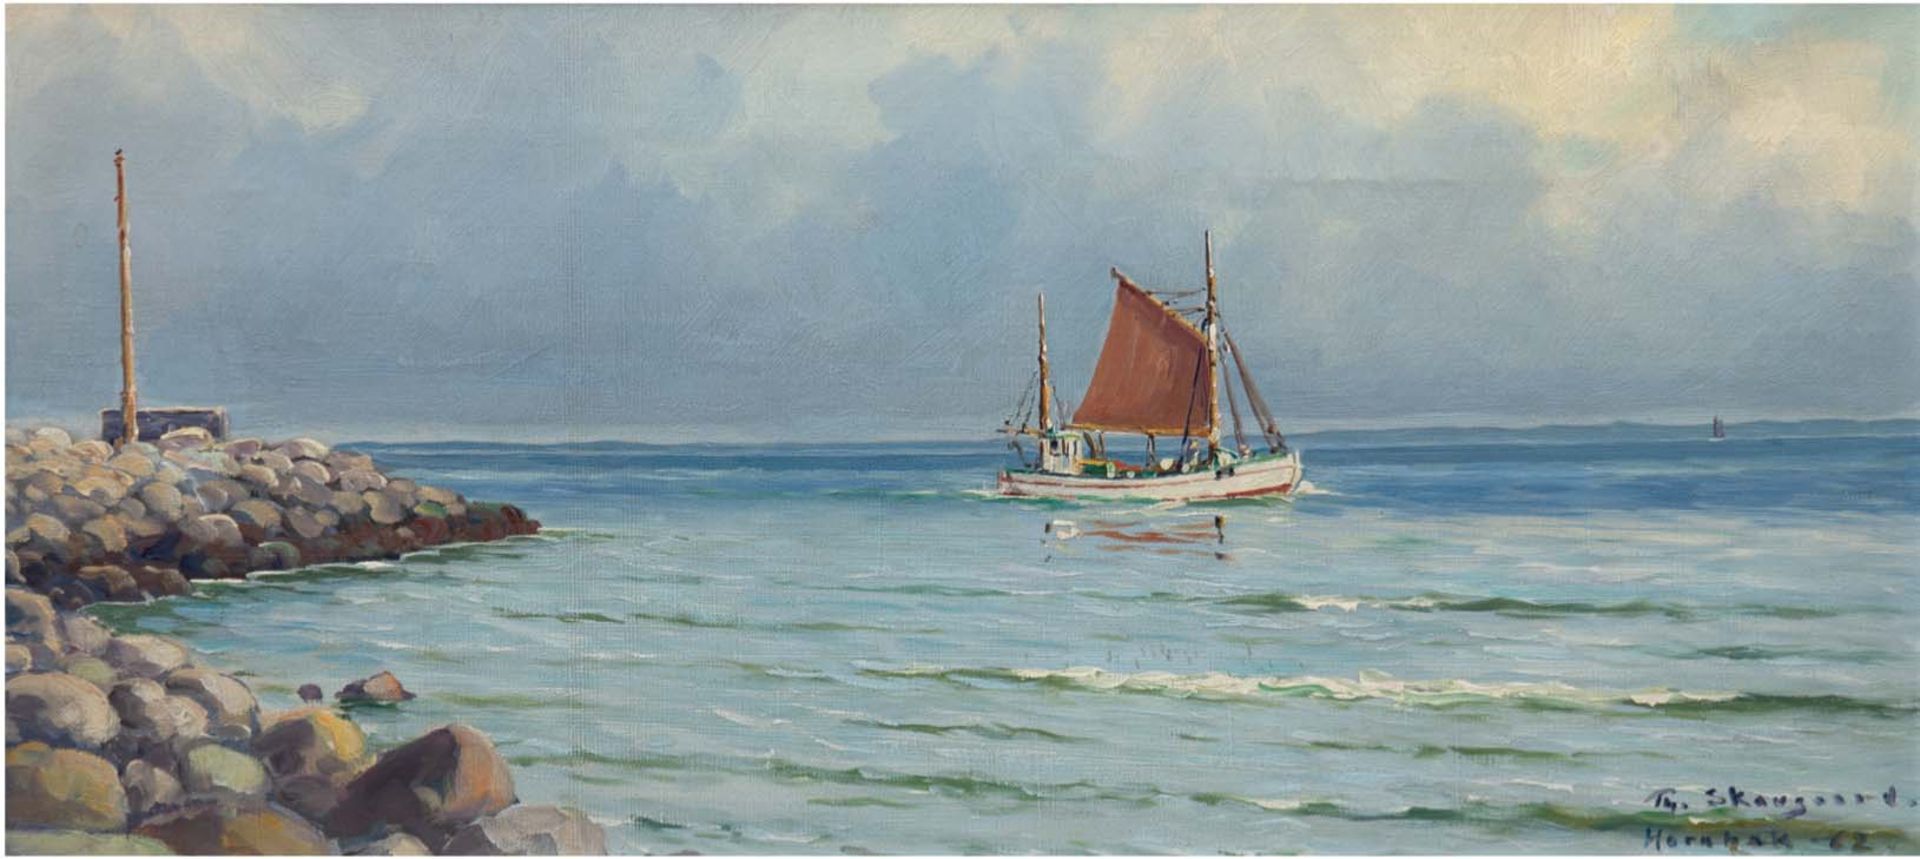 Skovgarrd, Theodore (1913-1993) "Segelboot vor Küste", Öl/Lw., sign. u.r. und dat. ´62, 32x63,5 cm,